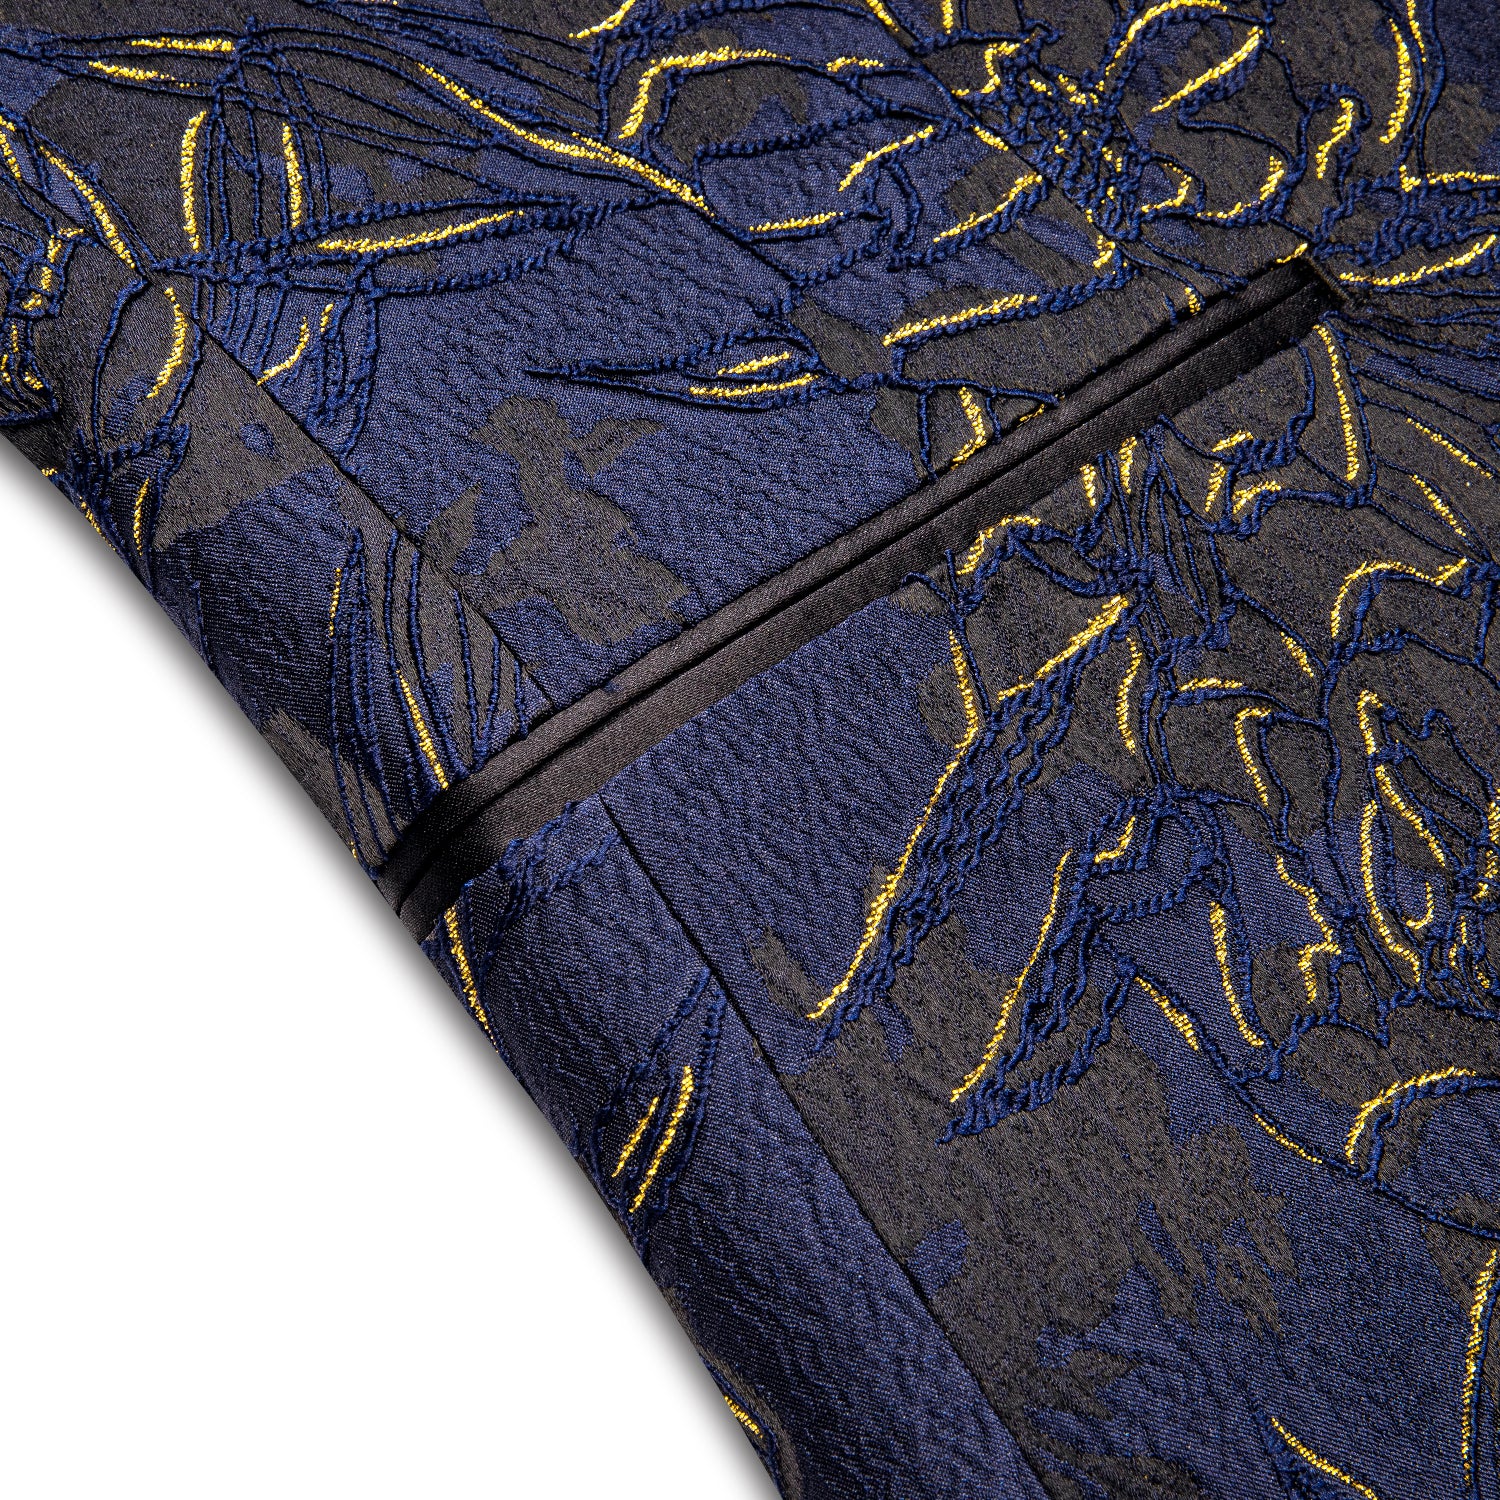 New Luxury Blue Gold Engraved Men's Suit Set